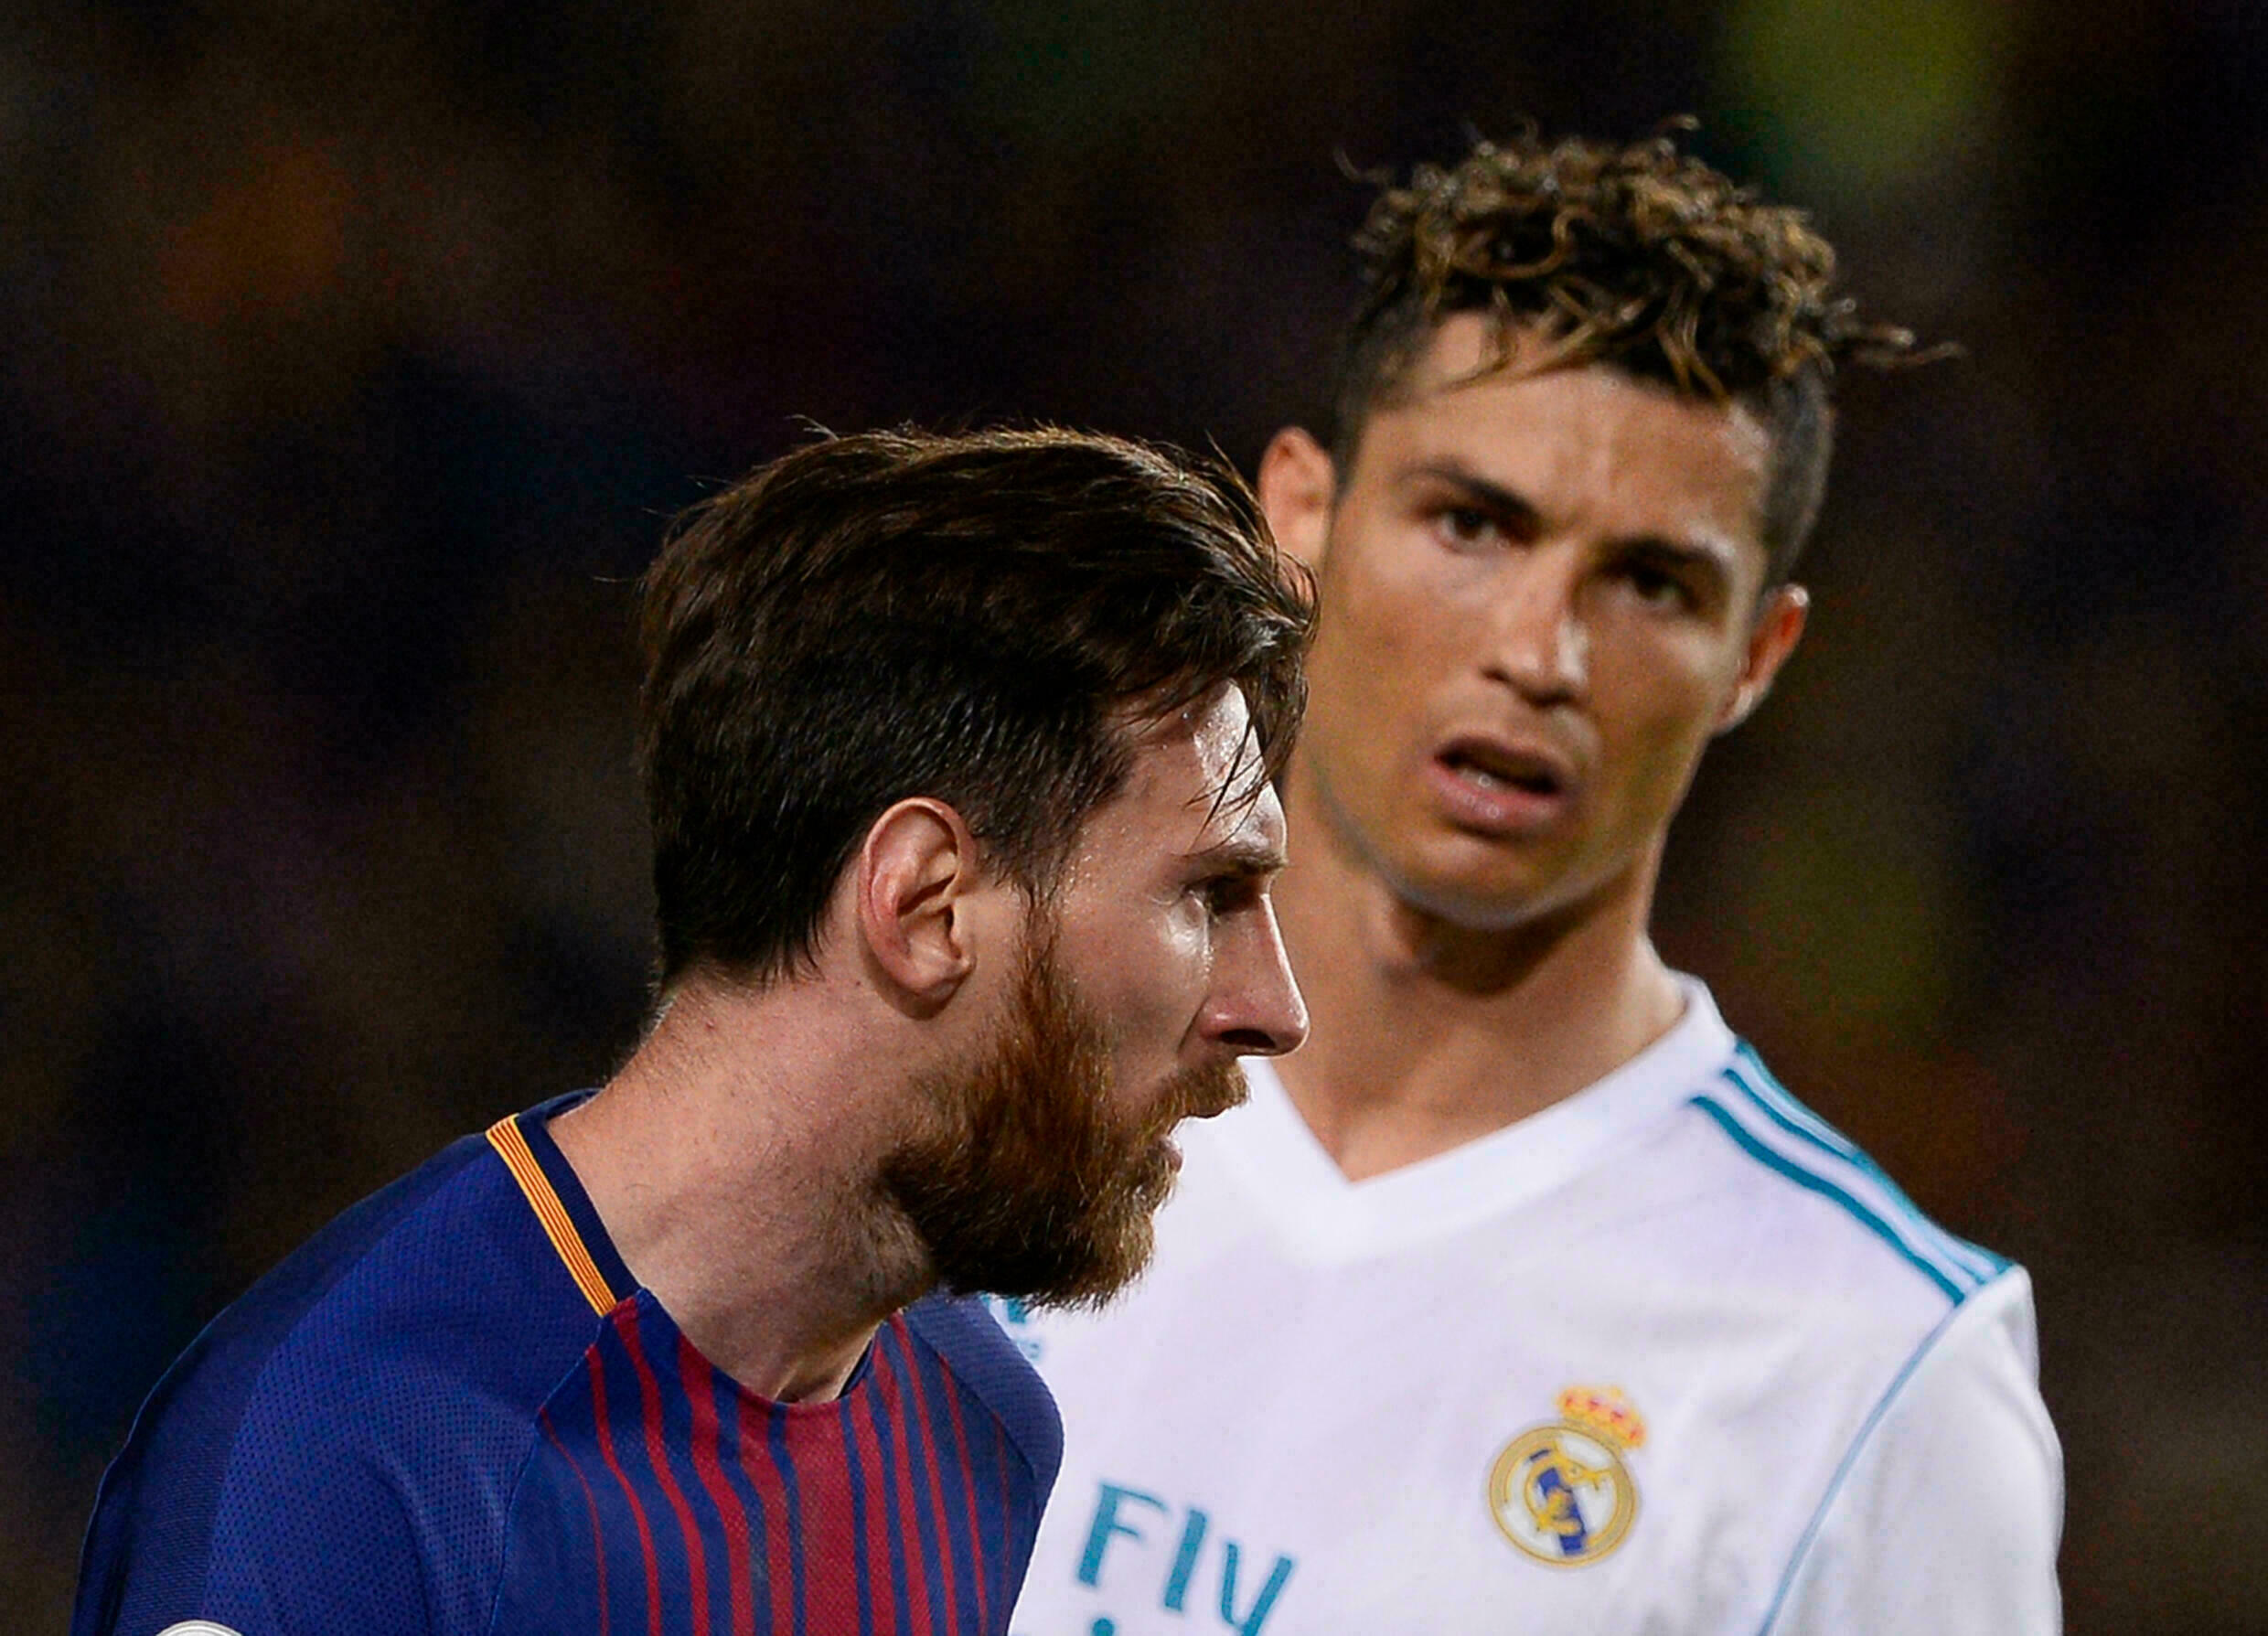 La rivalidad entre Messi y Cristiano Ronaldo llegó a definir la Liga española tanto como lo es entre Barcelona y Real Madrid.  Ronaldo se fue en 2018